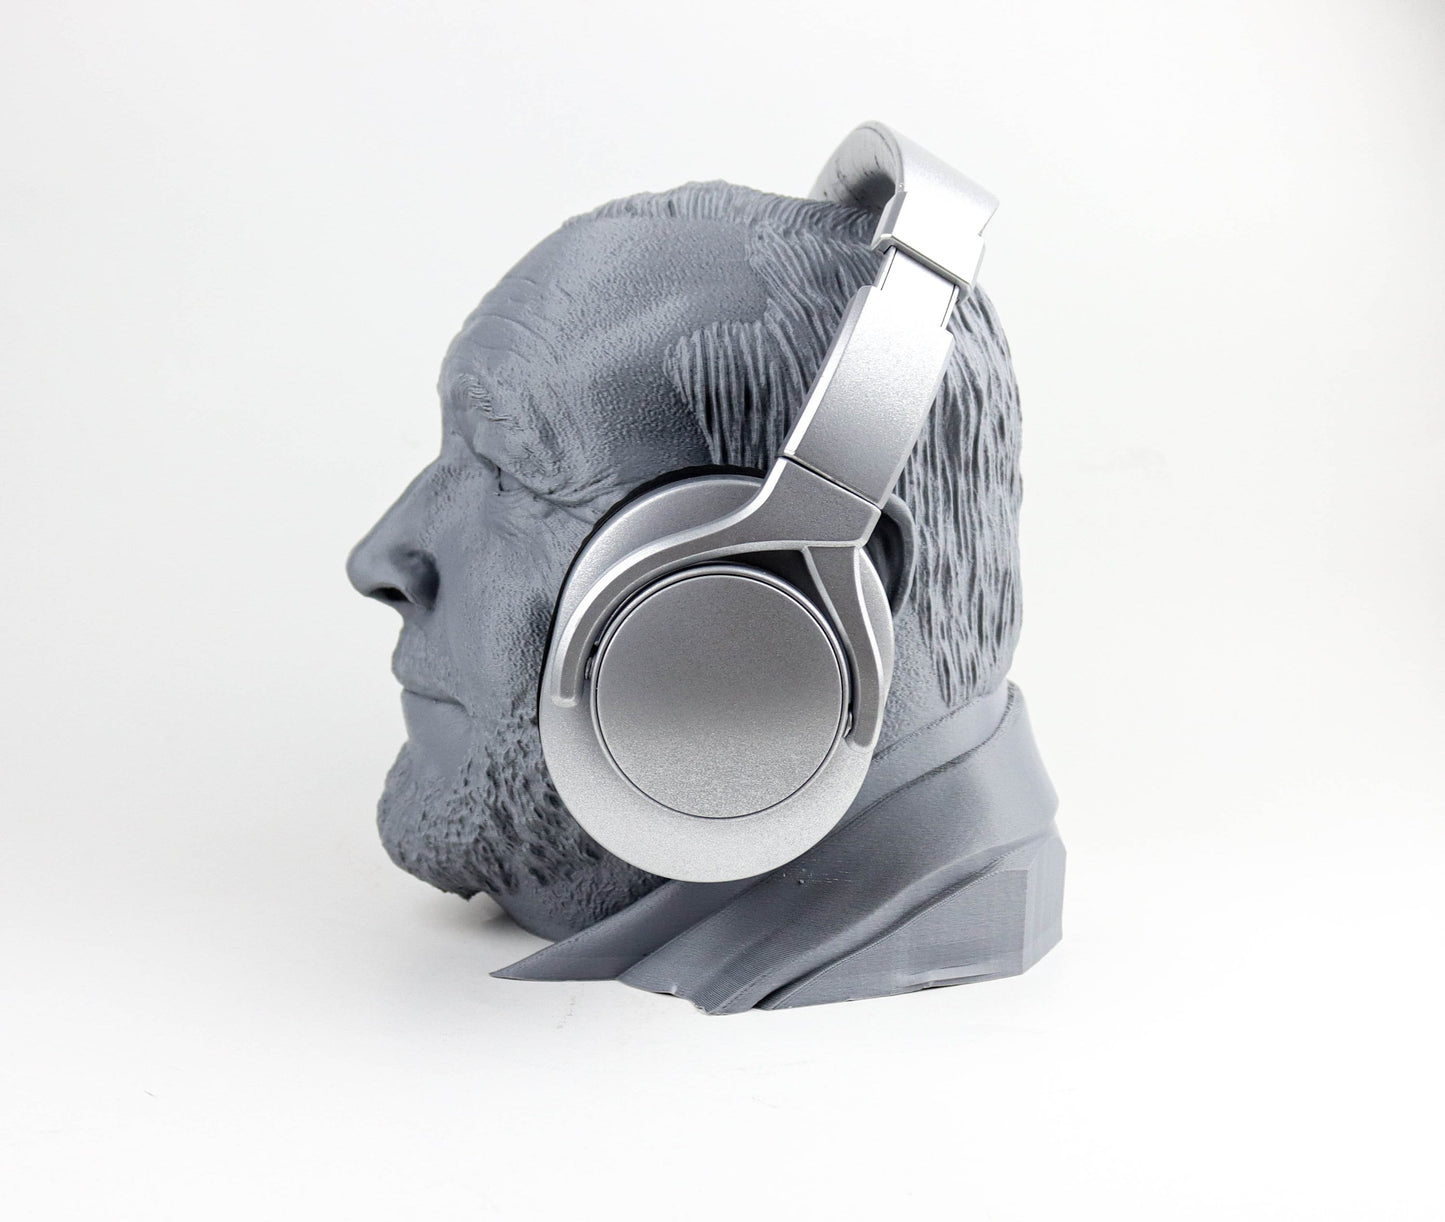 Alex Jones Headphone Holder, Headset Stand, Bust, Sculpture, Decoration